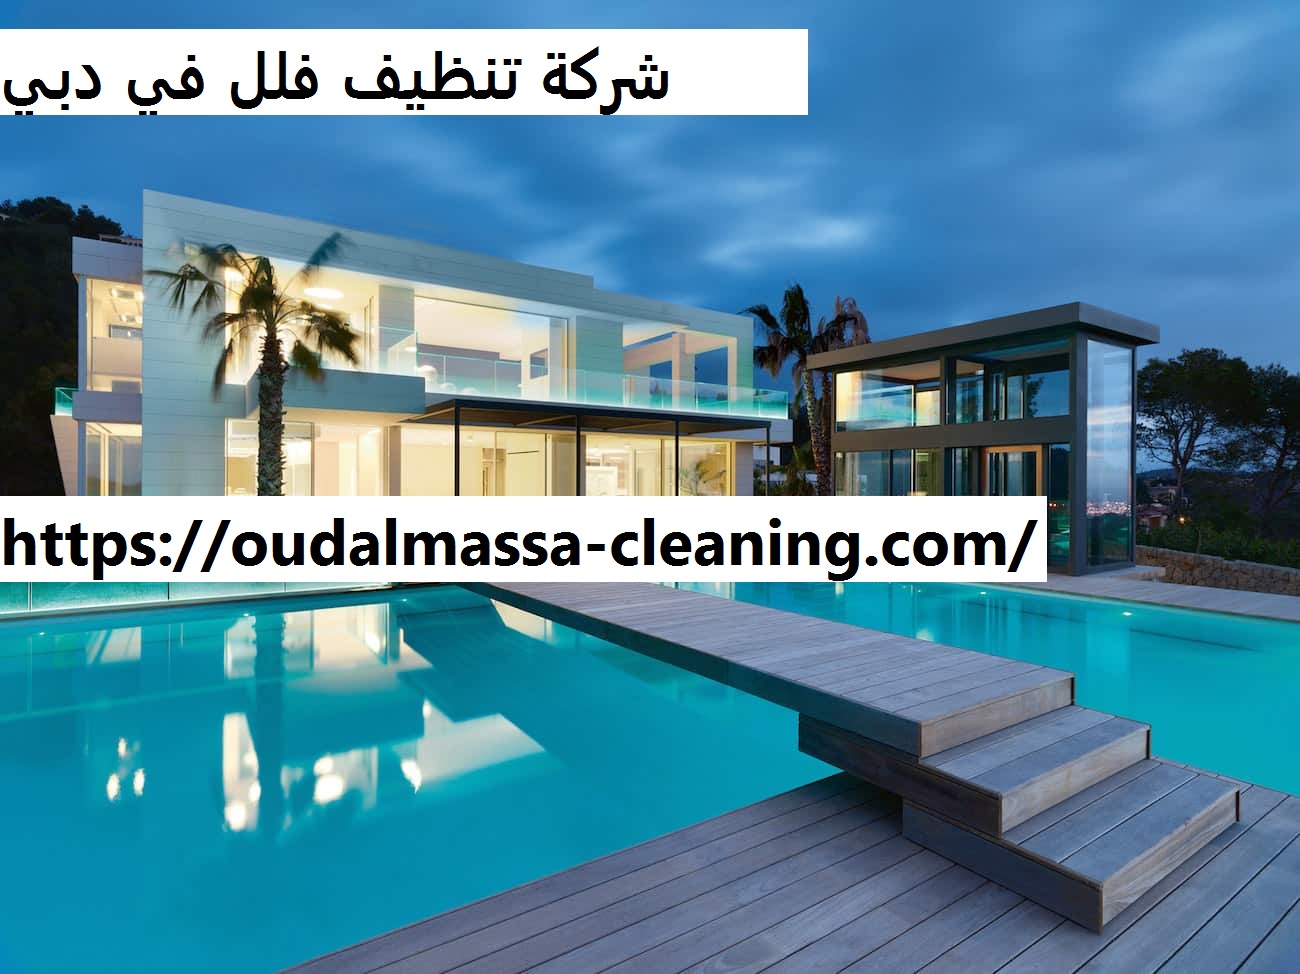 شركة تنظيف فلل في دبي |0523353369| تنظيف منازل